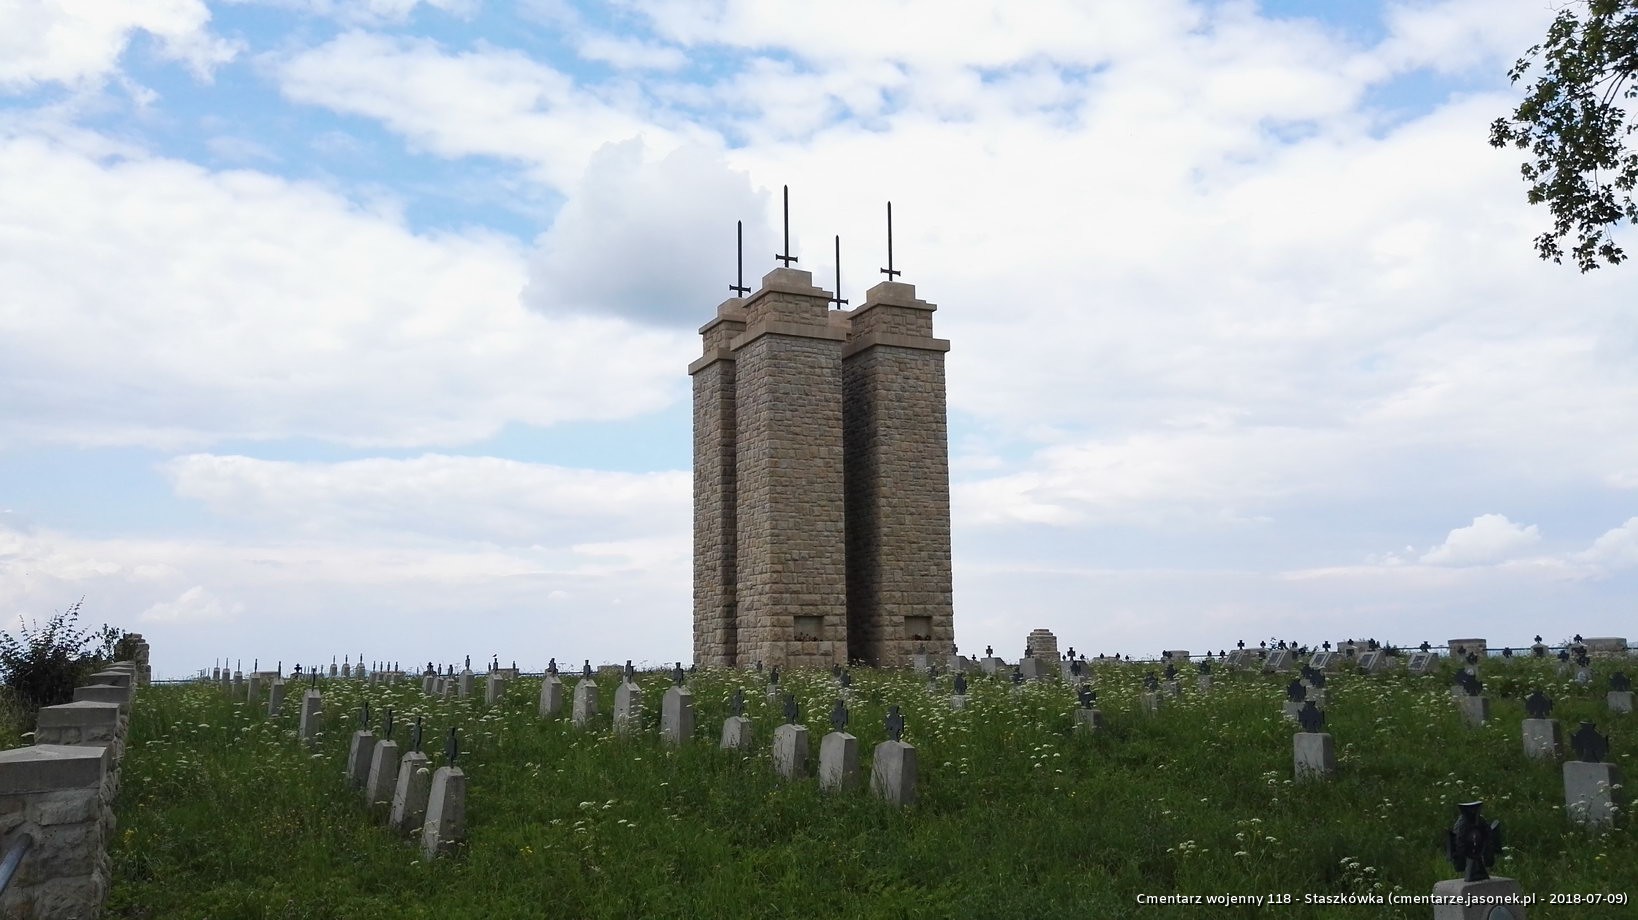 Cmentarz wojenny 118 - Staszkówka